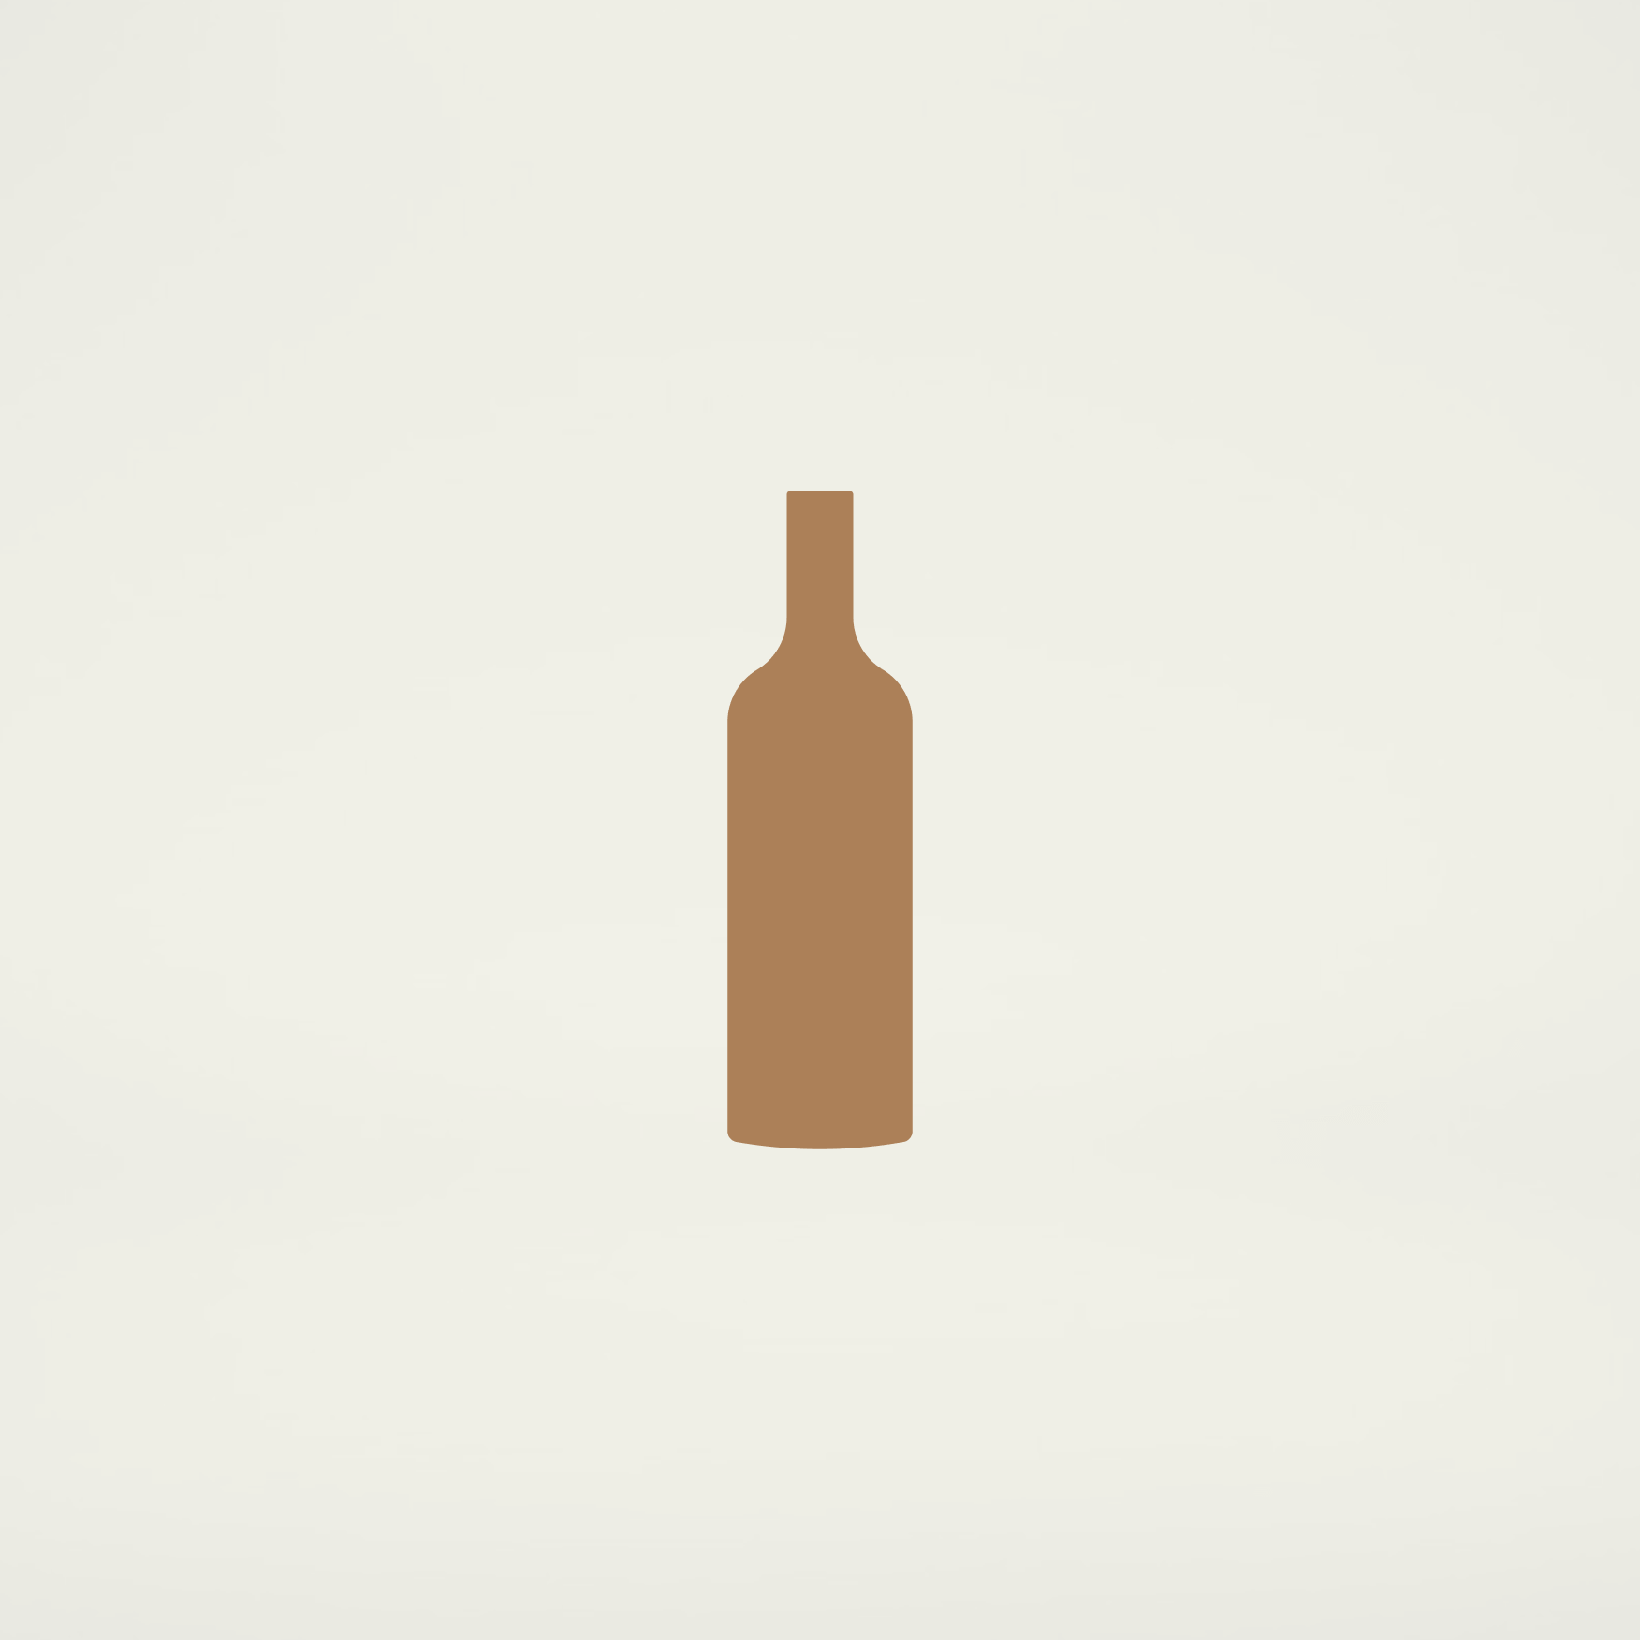 Resonance, Resonance Vineyard Pinot Noir, Yamhill-Carlton